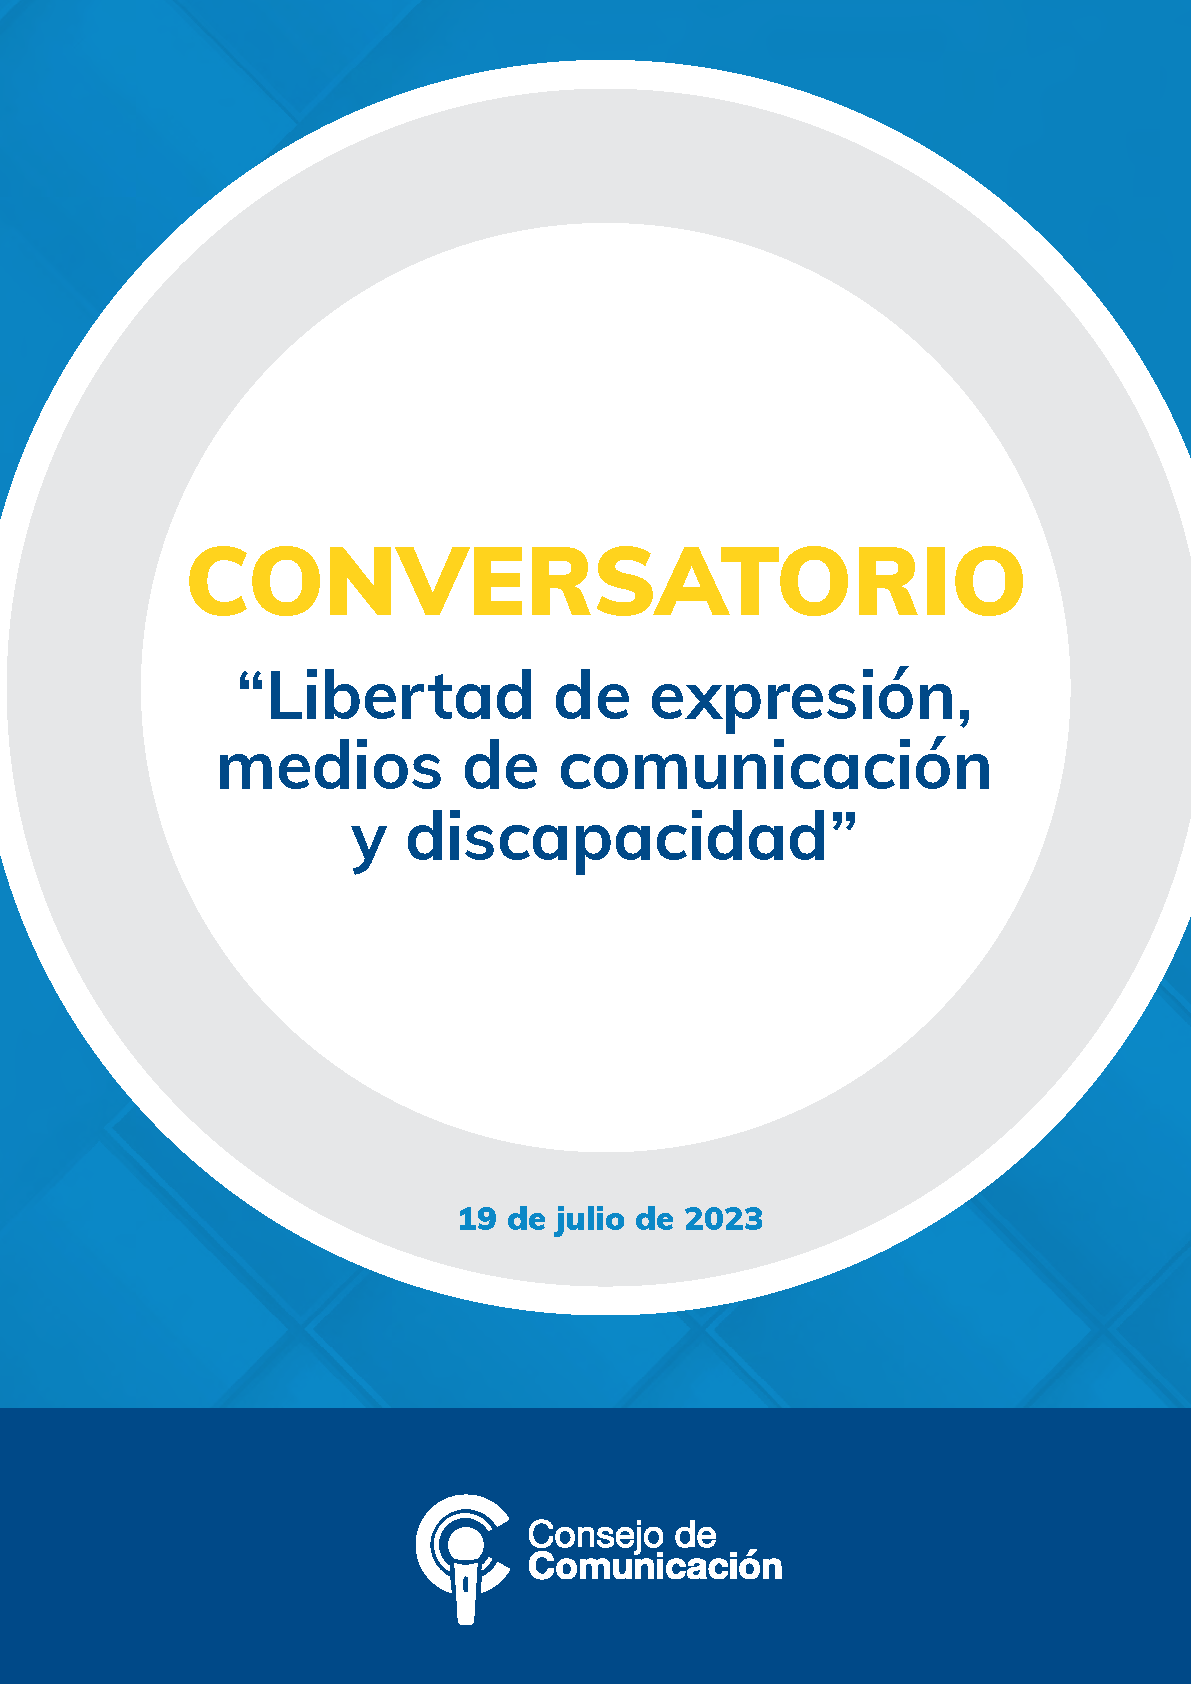 Conversatorio Libertad de expresión, medios de comunicación y discapacidad”